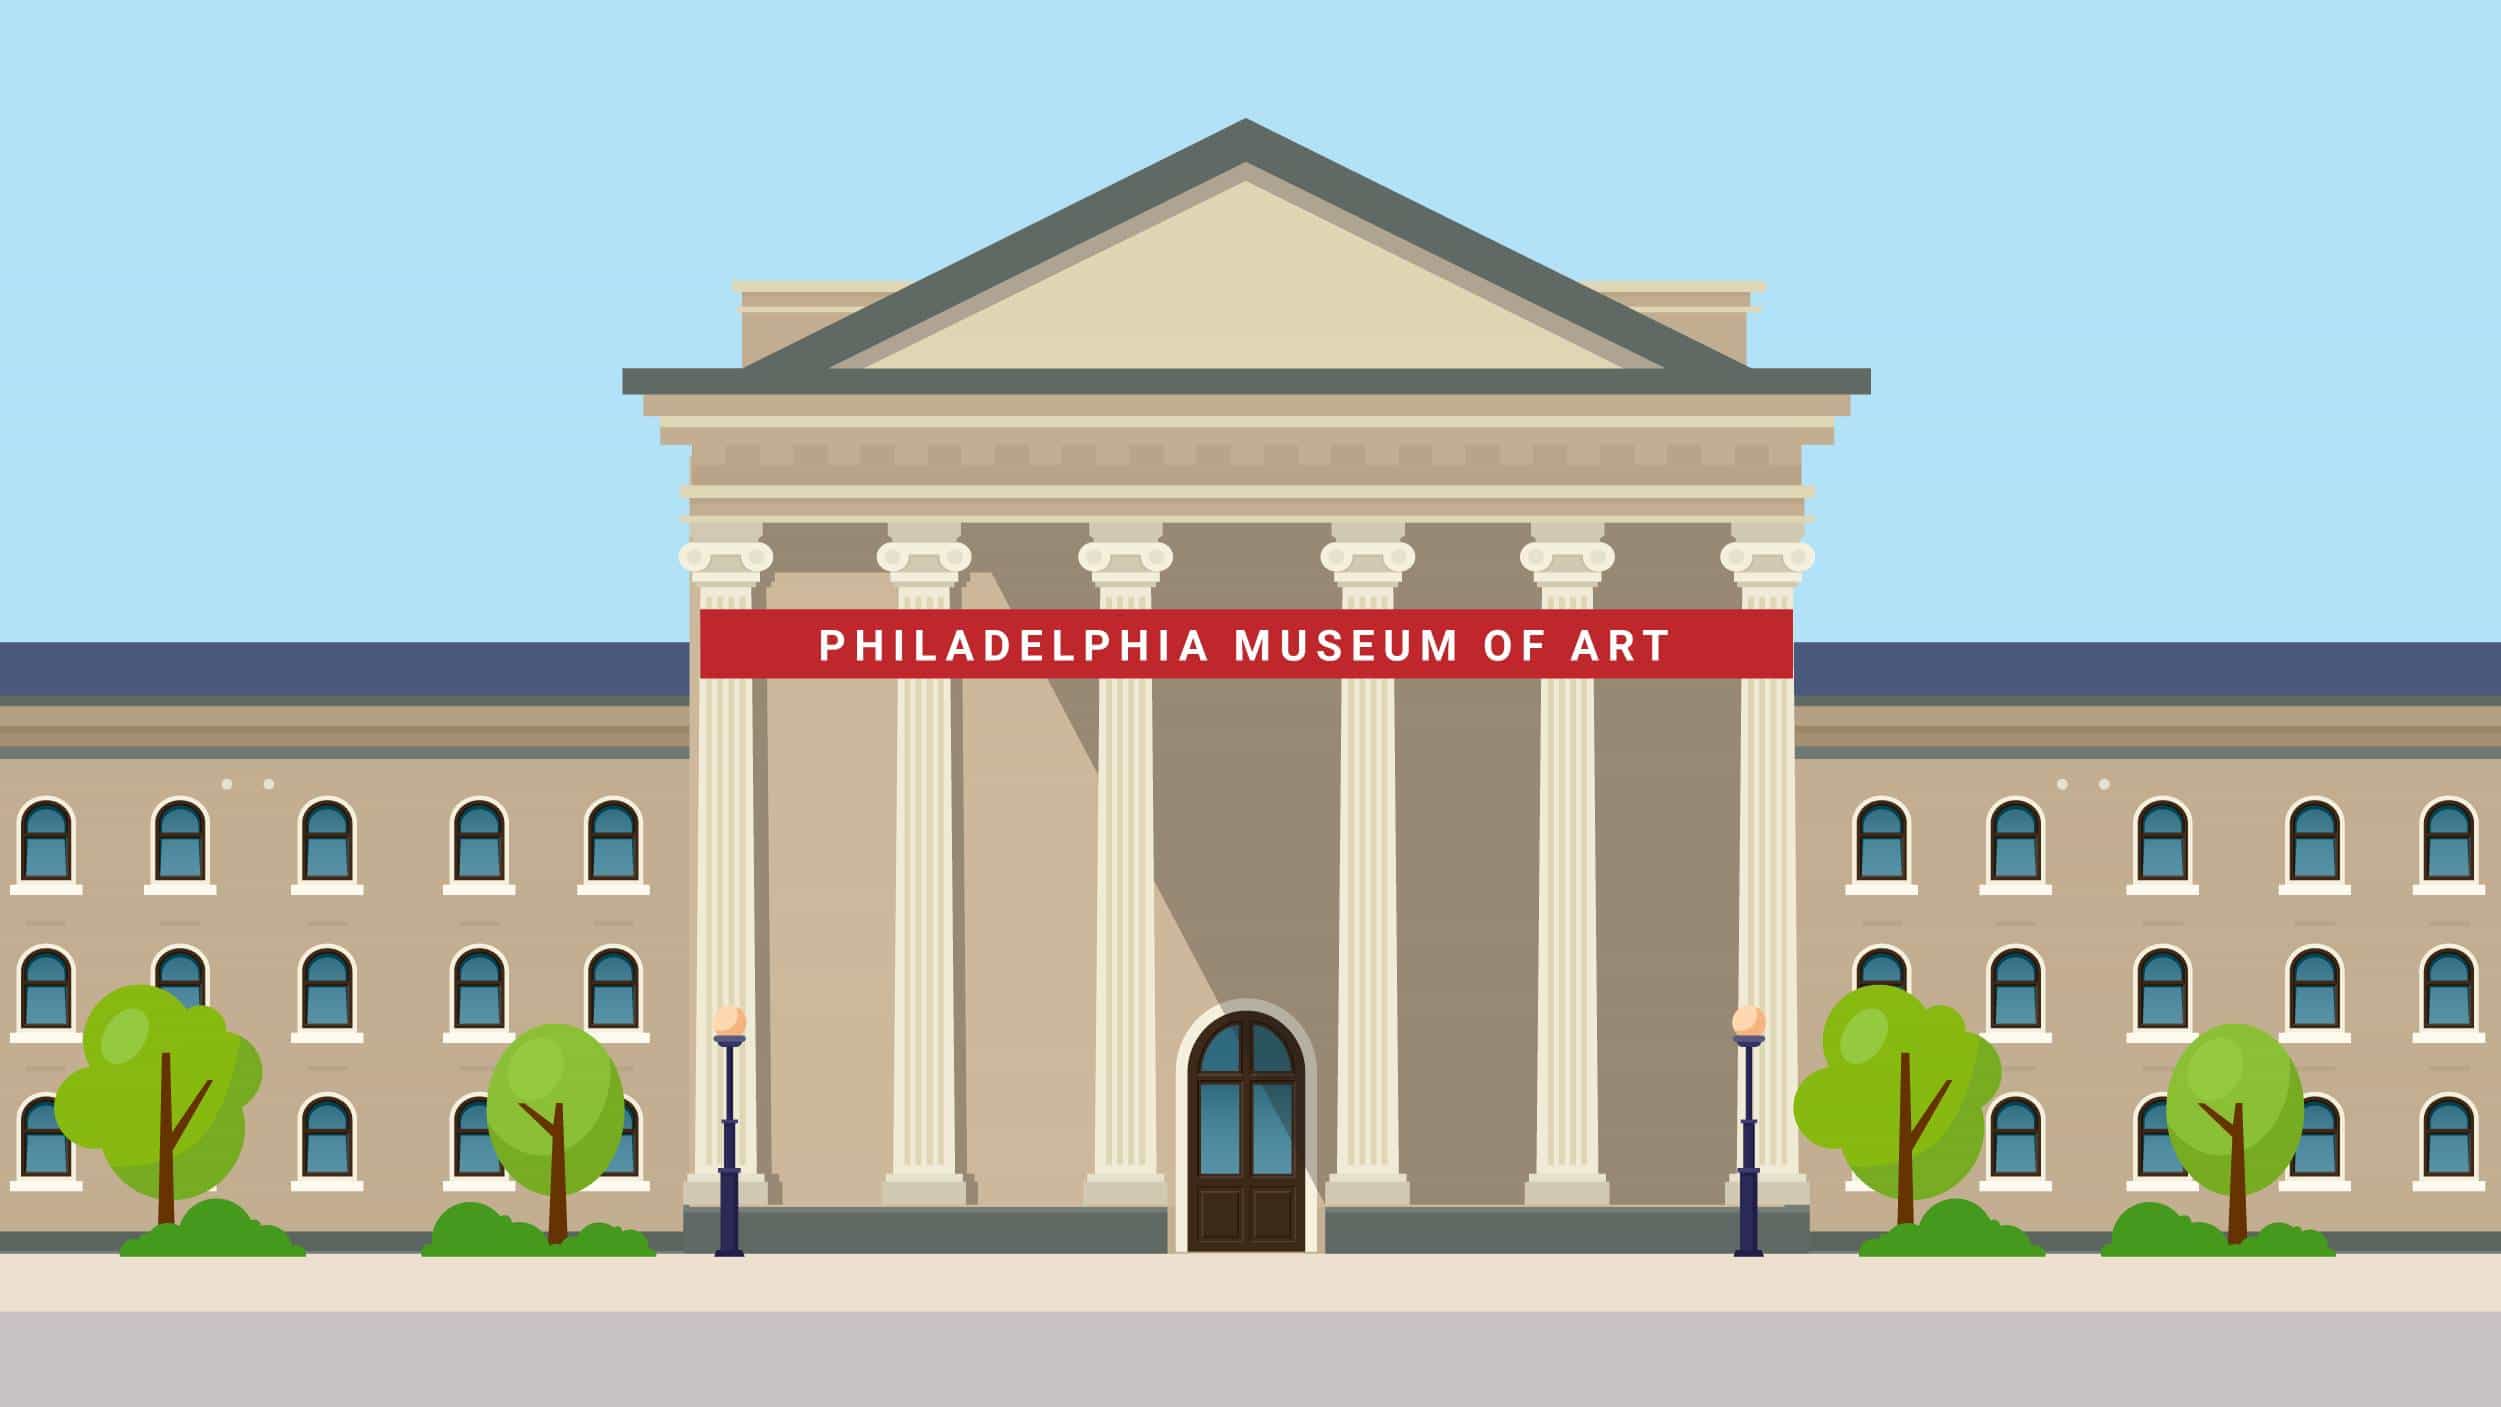 An illustration of the Philadelphia Museum of Art.